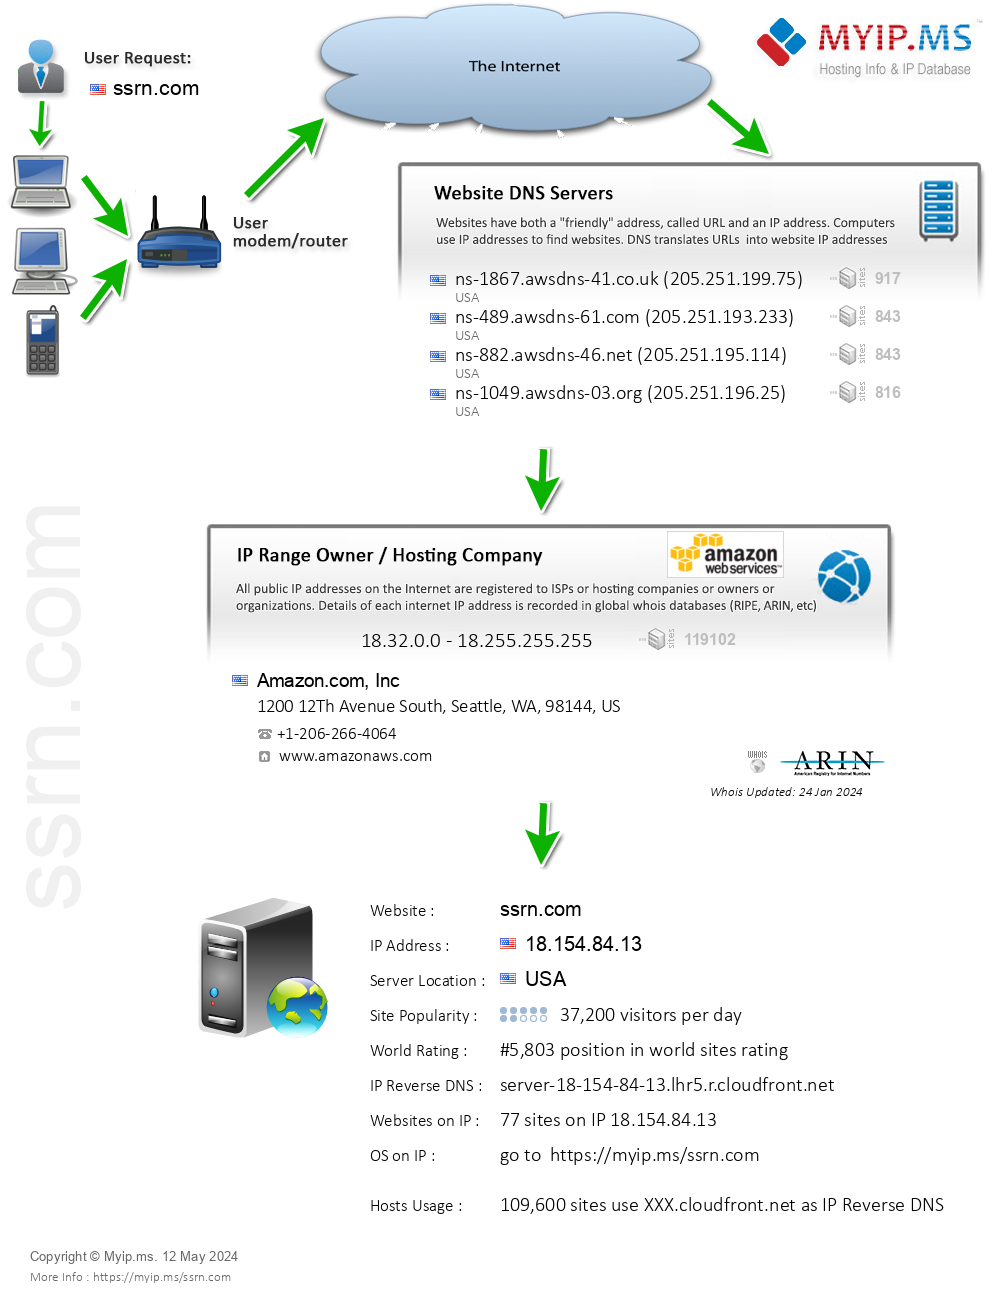 Ssrn.com - Website Hosting Visual IP Diagram